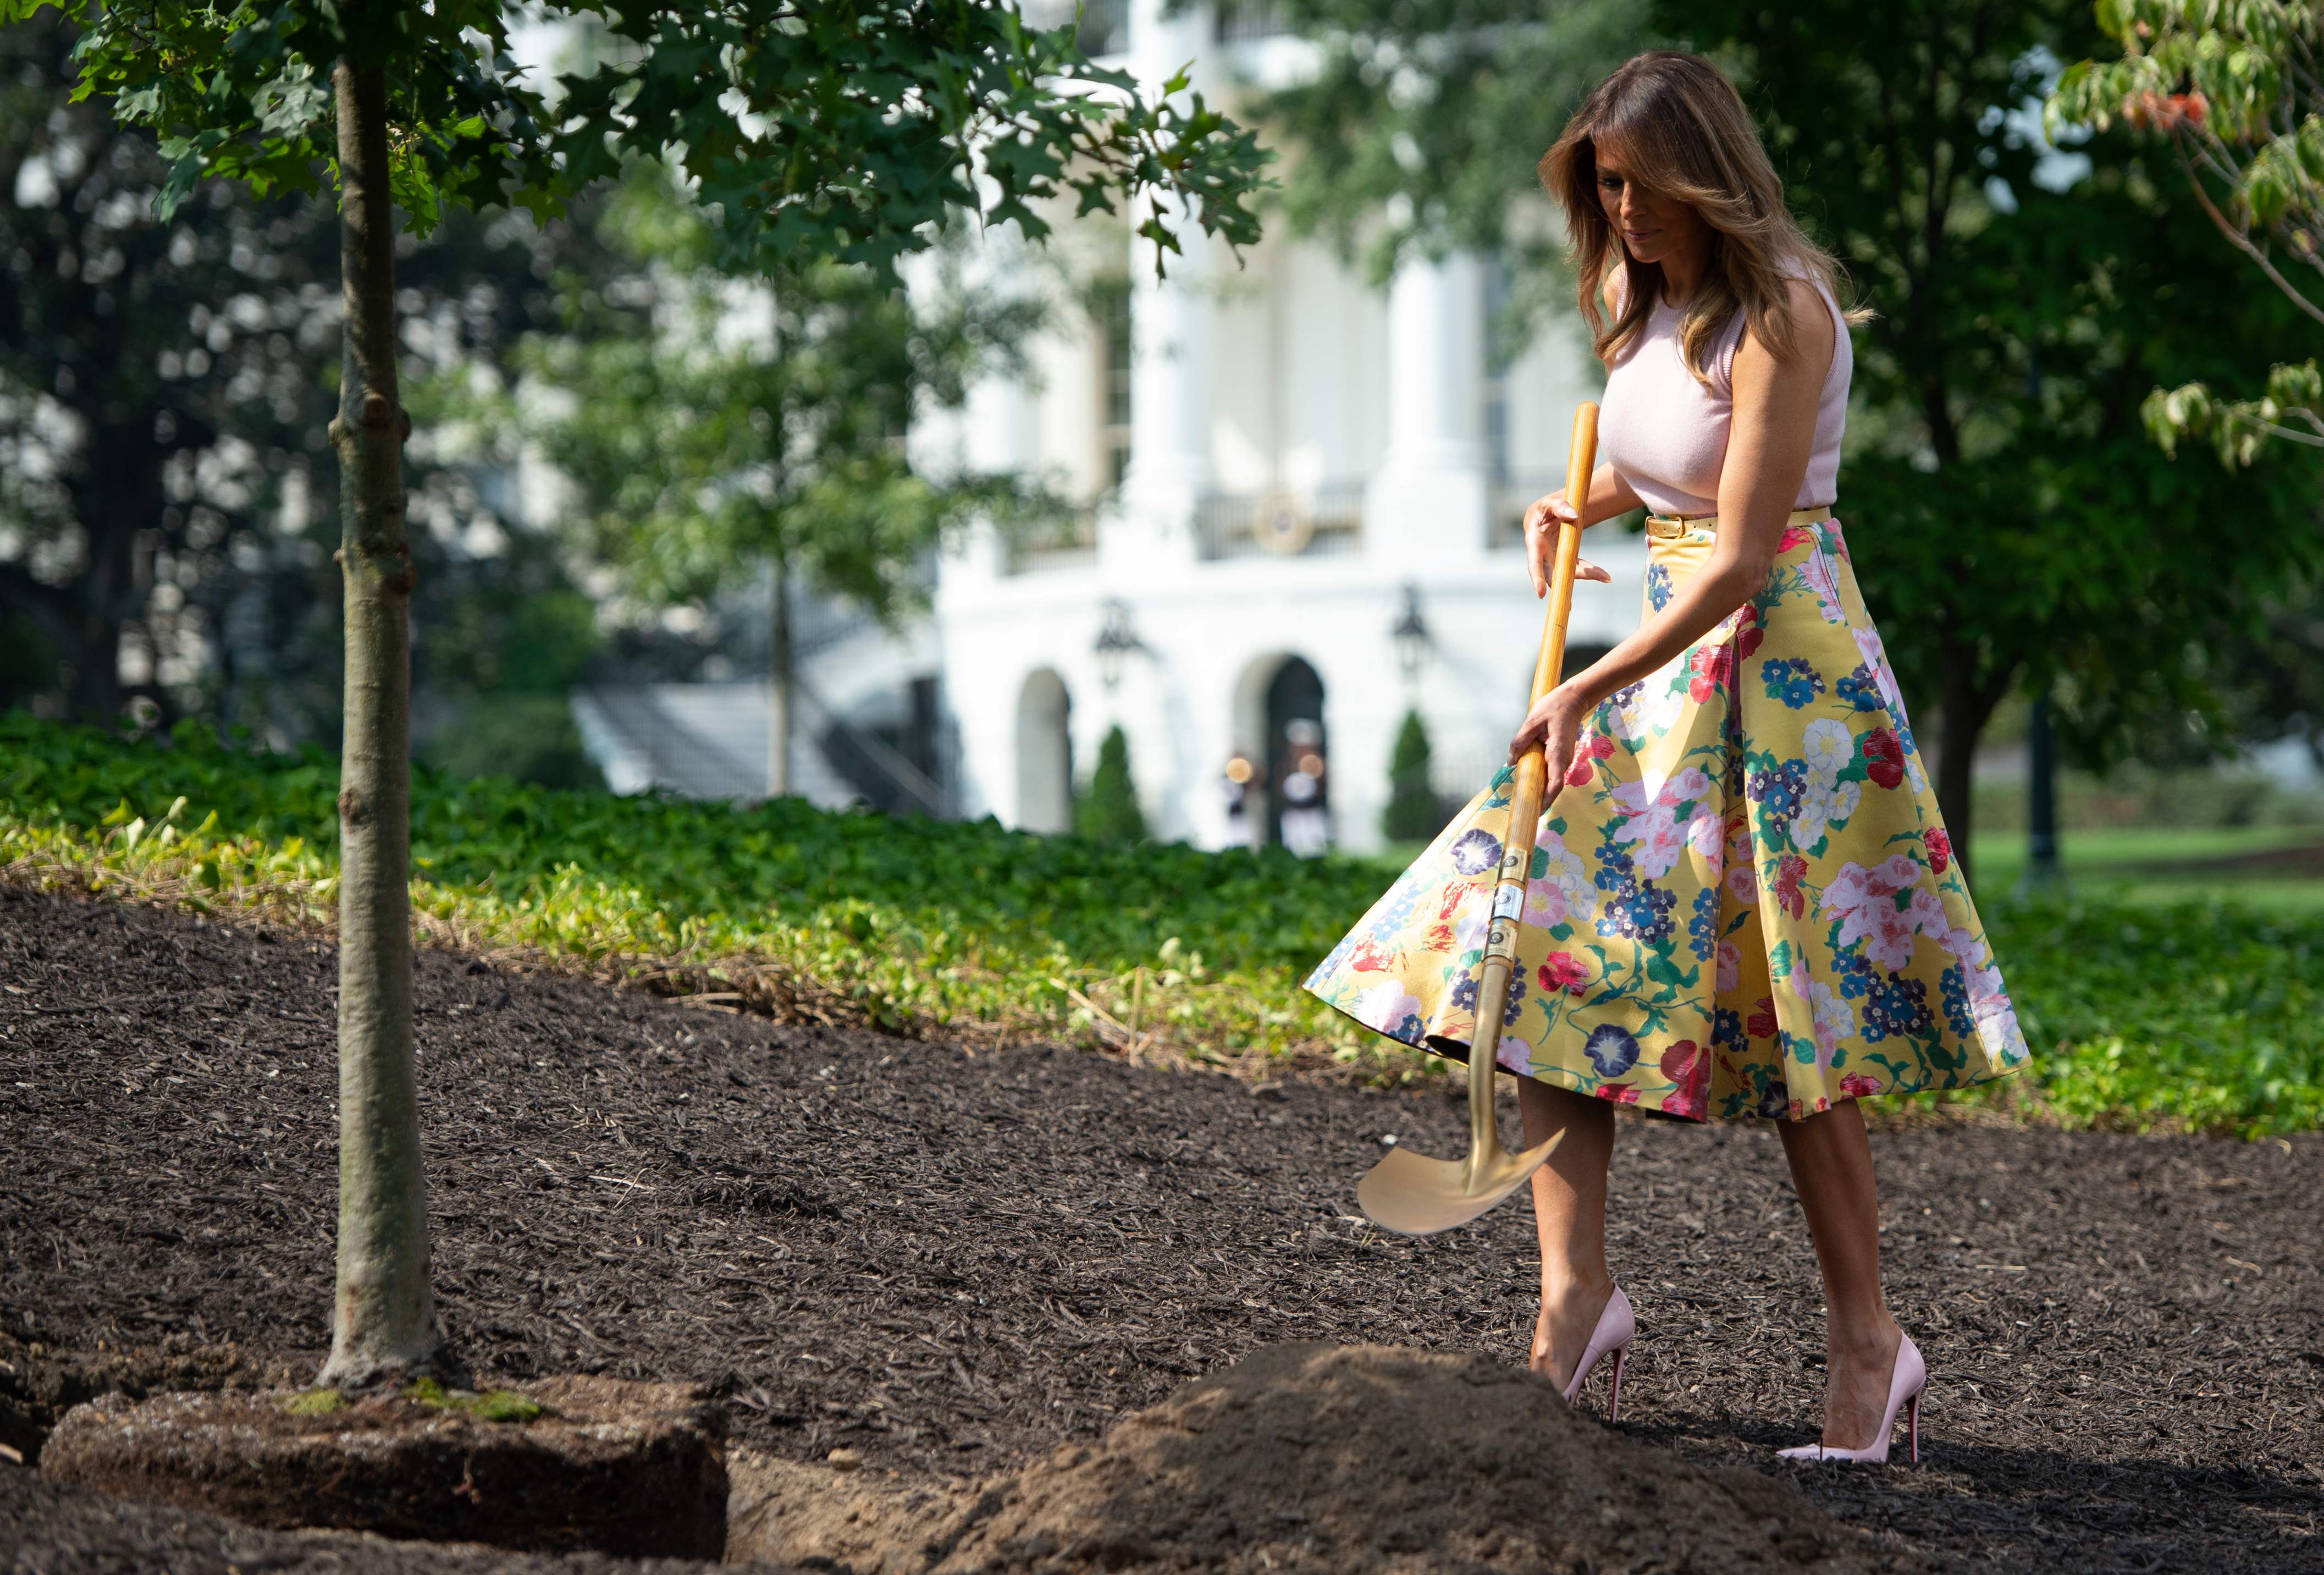 وصول ميلانيا ترامب لحديق البيت الأبيض 